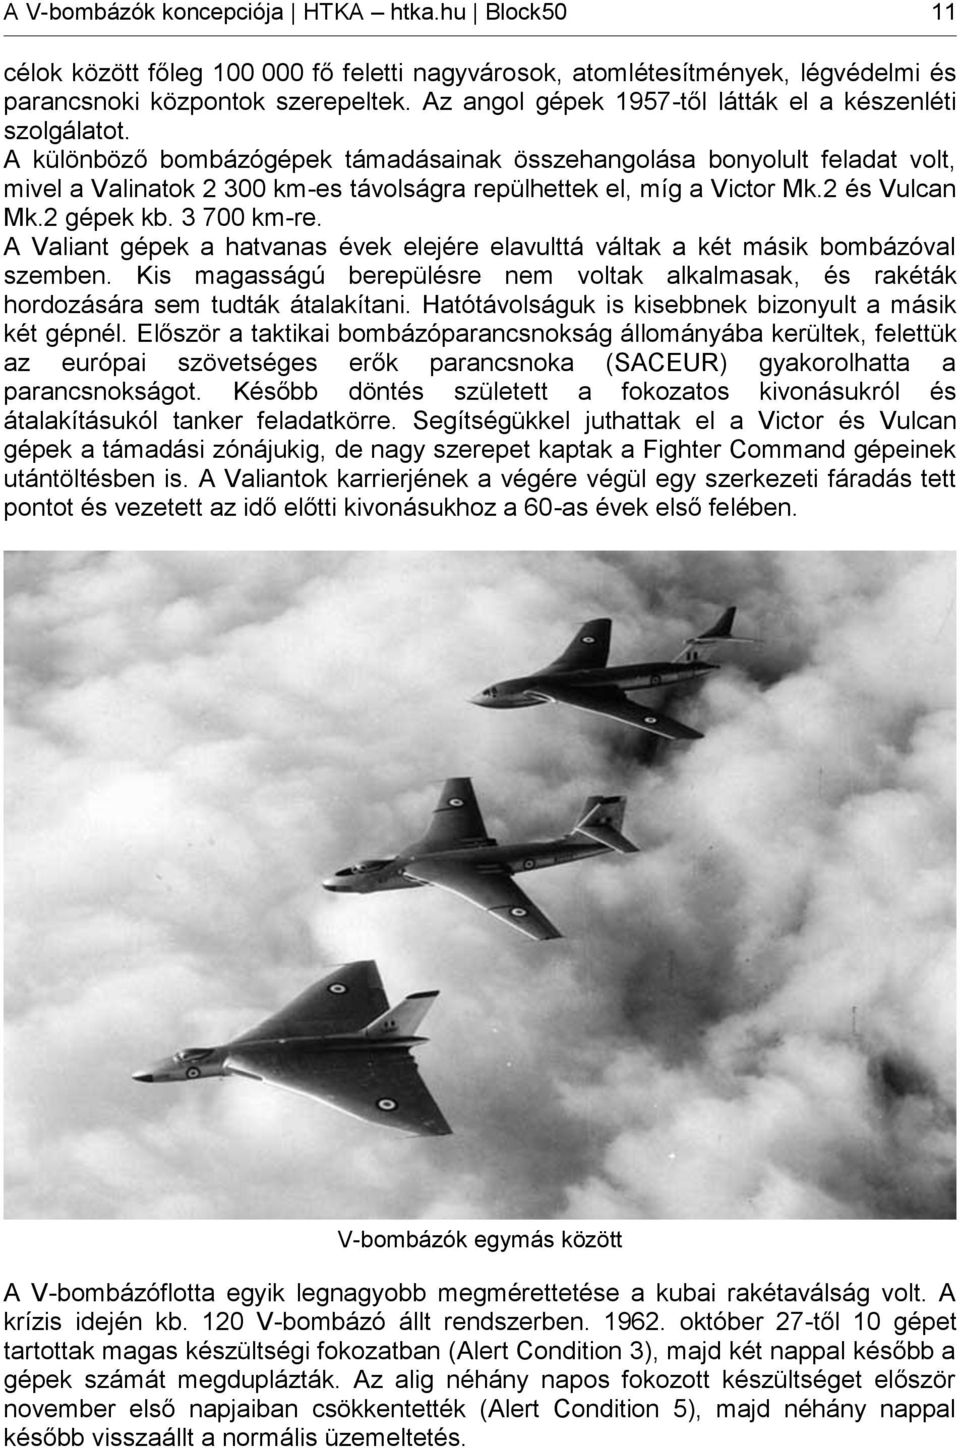 A különböző bombázógépek támadásainak összehangolása bonyolult feladat volt, mivel a Valinatok 2 300 km-es távolságra repülhettek el, míg a Victor Mk.2 és Vulcan Mk.2 gépek kb. 3 700 km-re.